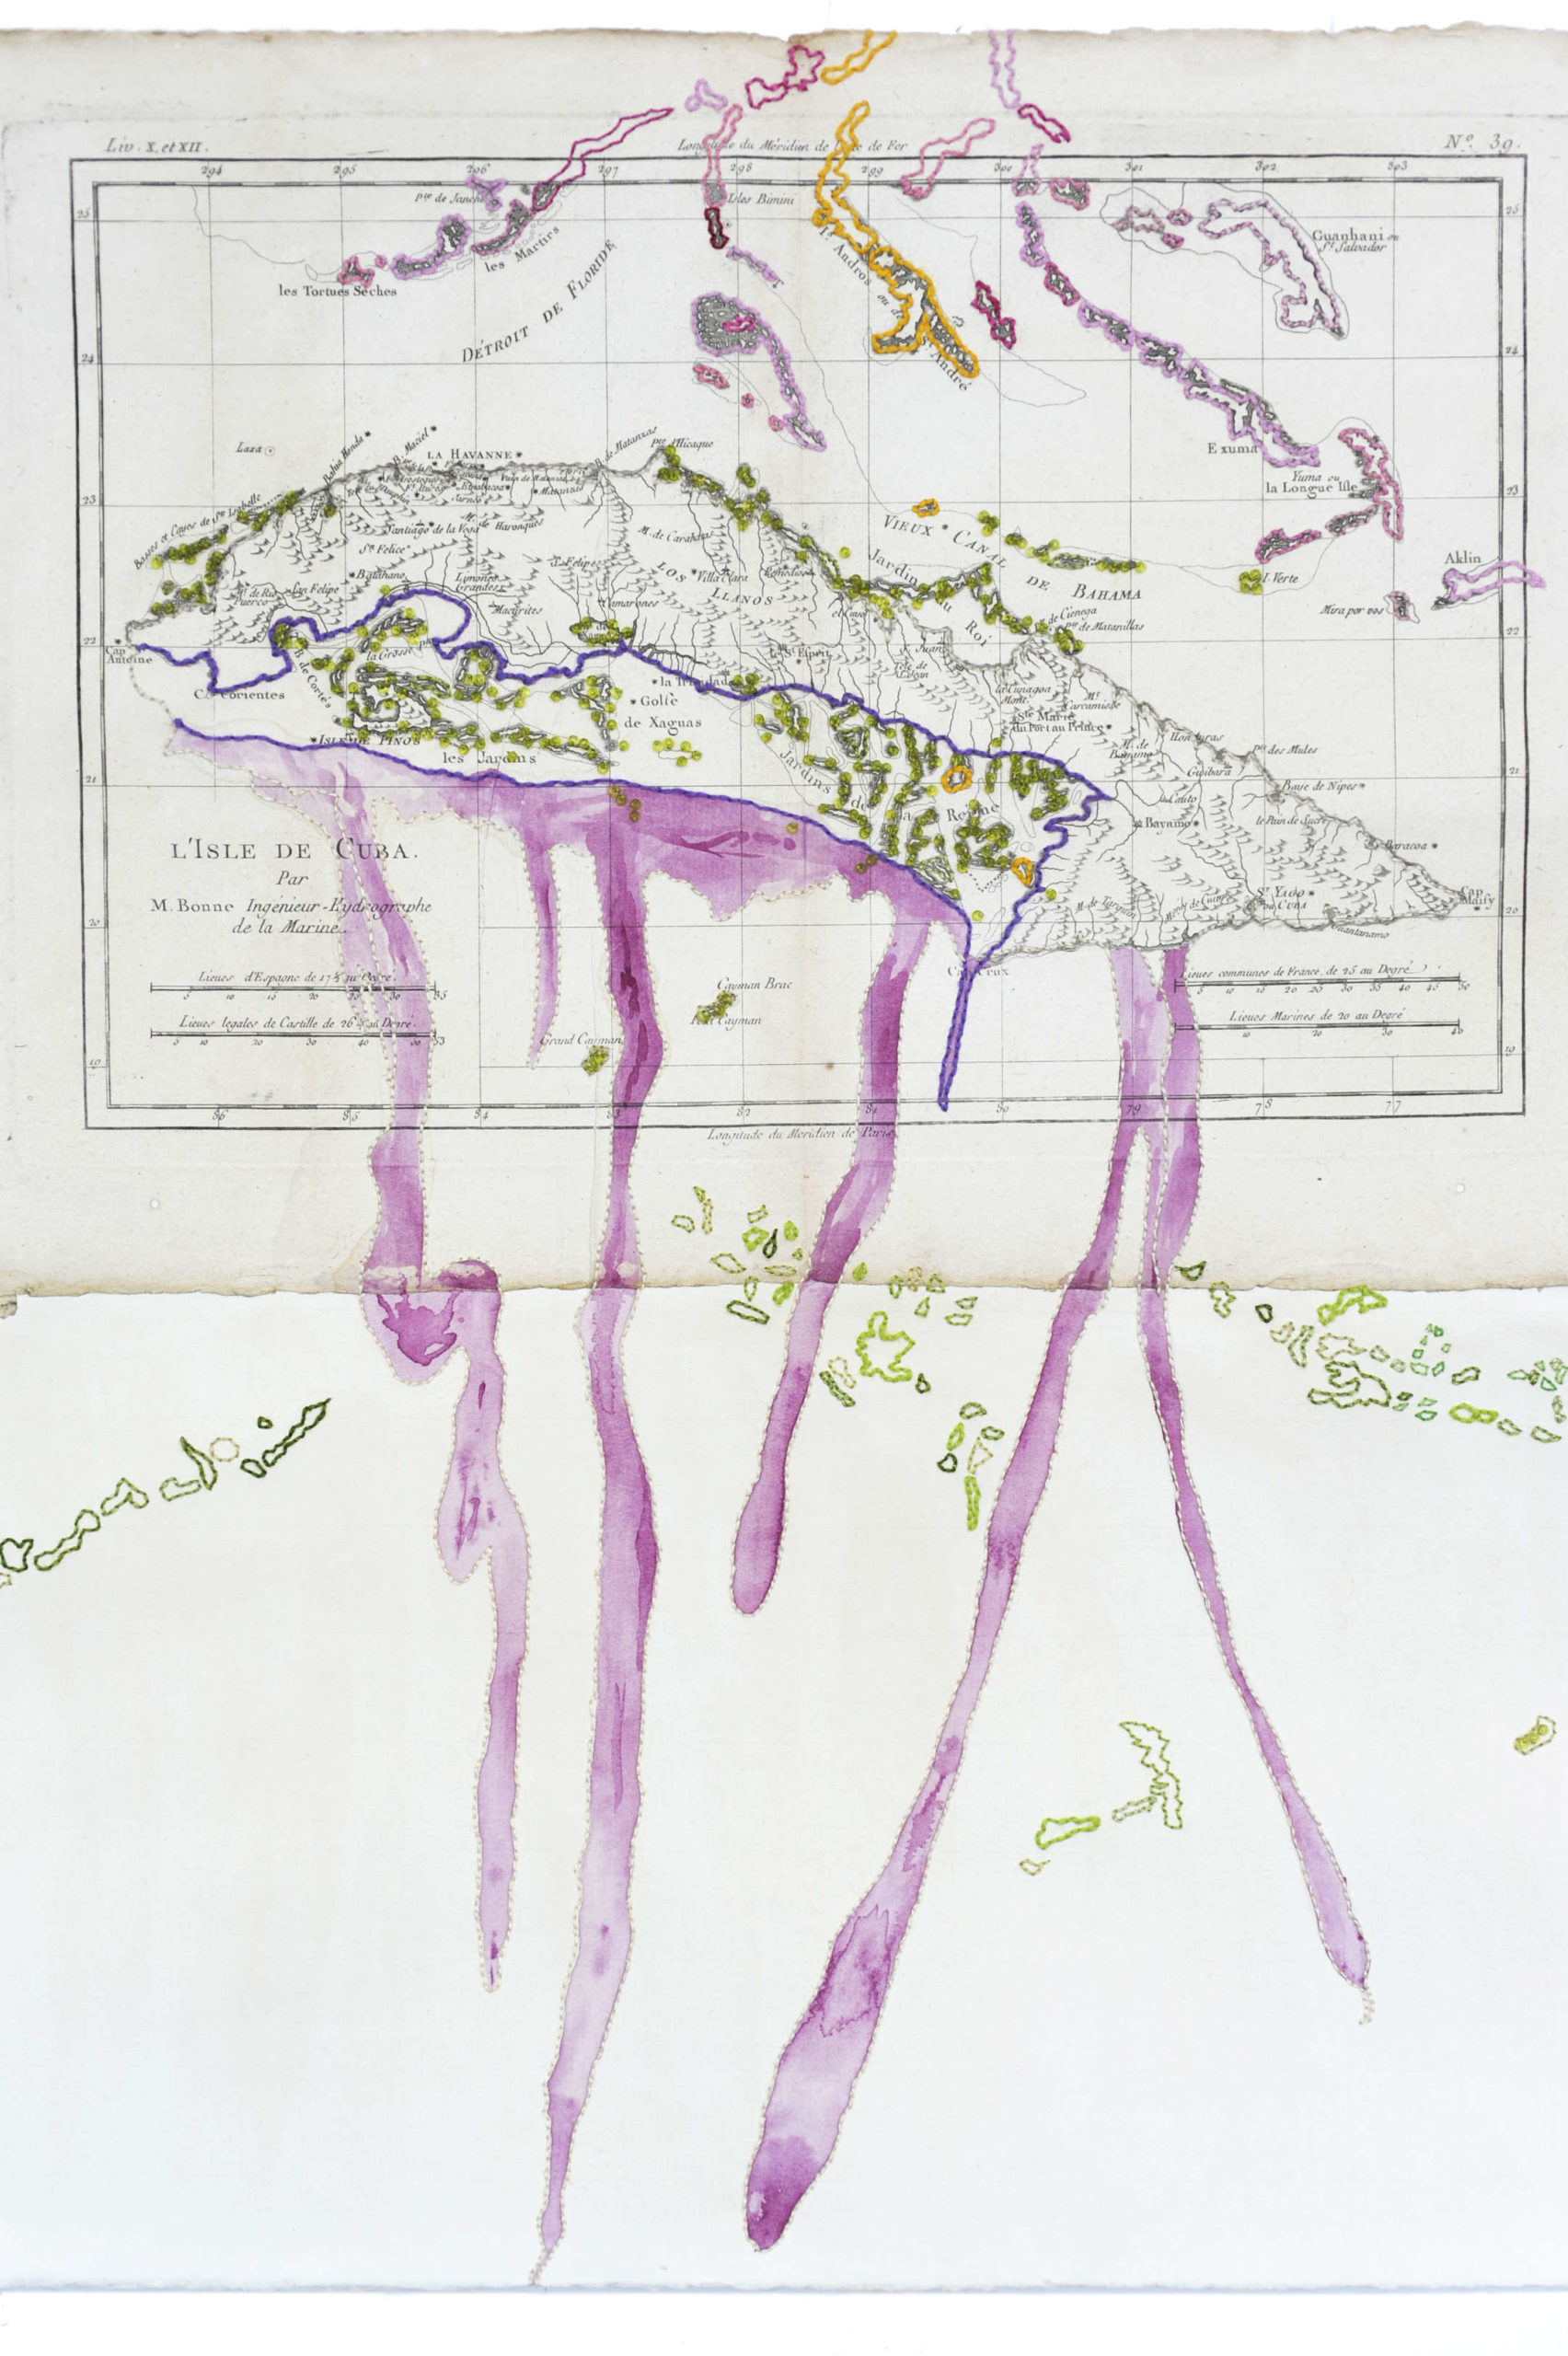 Nouveau Monde 5 - Broderie, insertion perles, aquarelle sur carte marine ancienne de l'île de Cuba par Sylvie Hénot artiste plasticienne